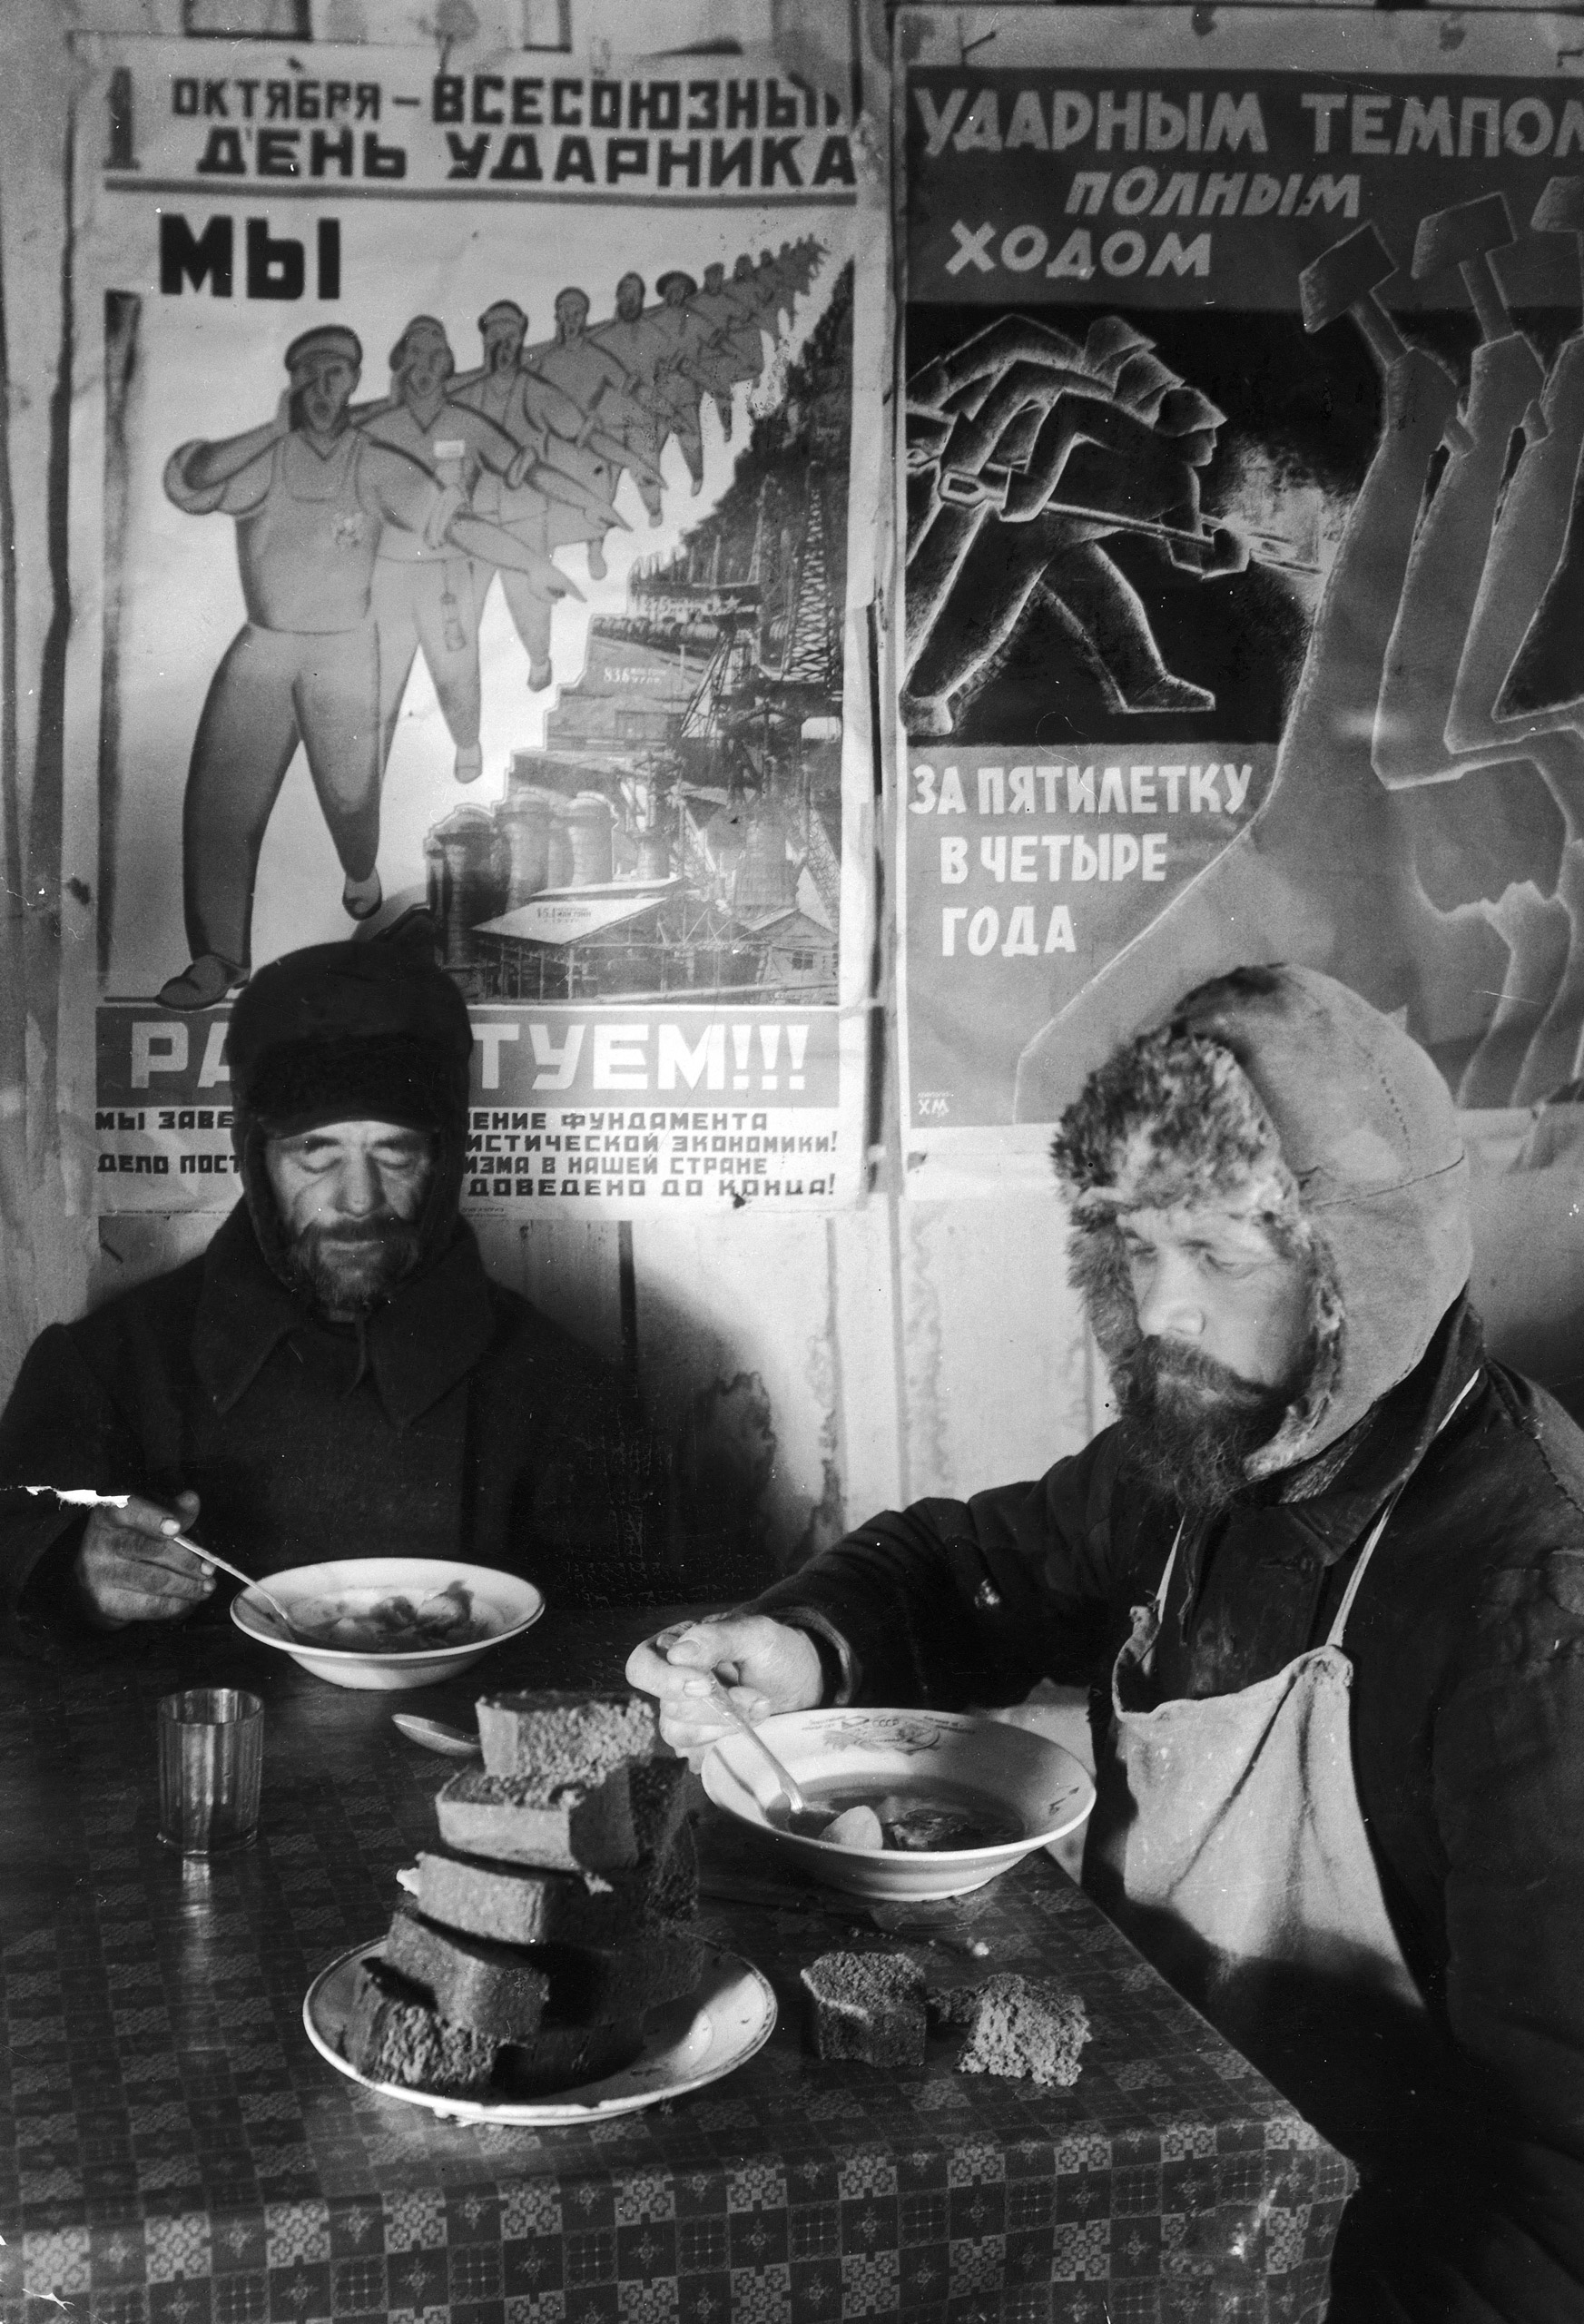 Margaret Bourke-White 1931 Fortune magazine photo essay in Russia